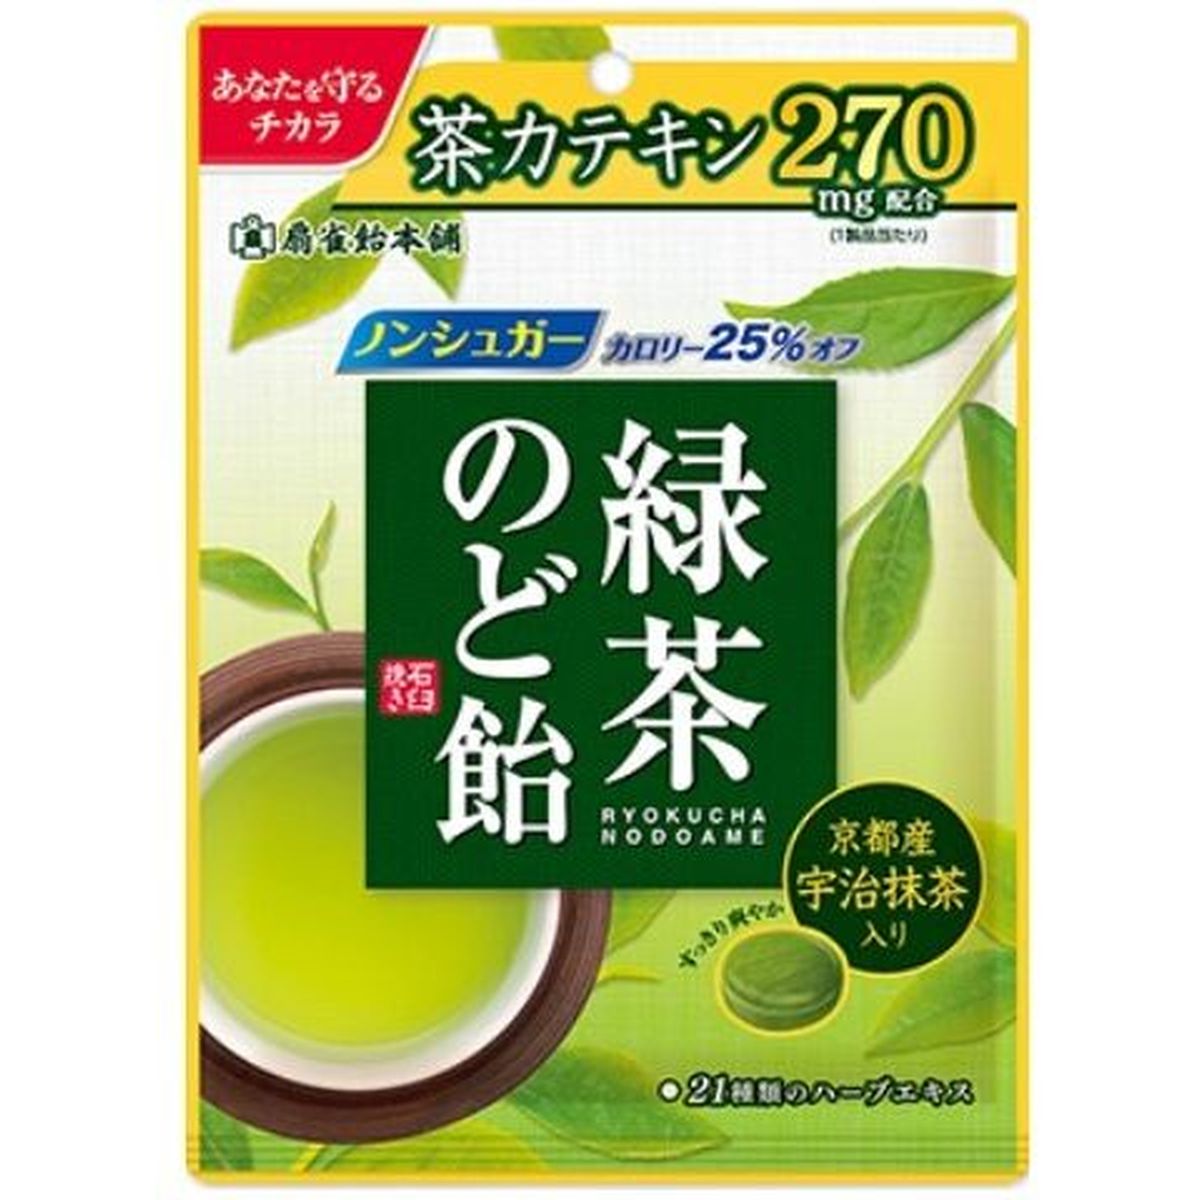 【6個入リ】扇雀飴本舗 緑茶ノド飴 90g